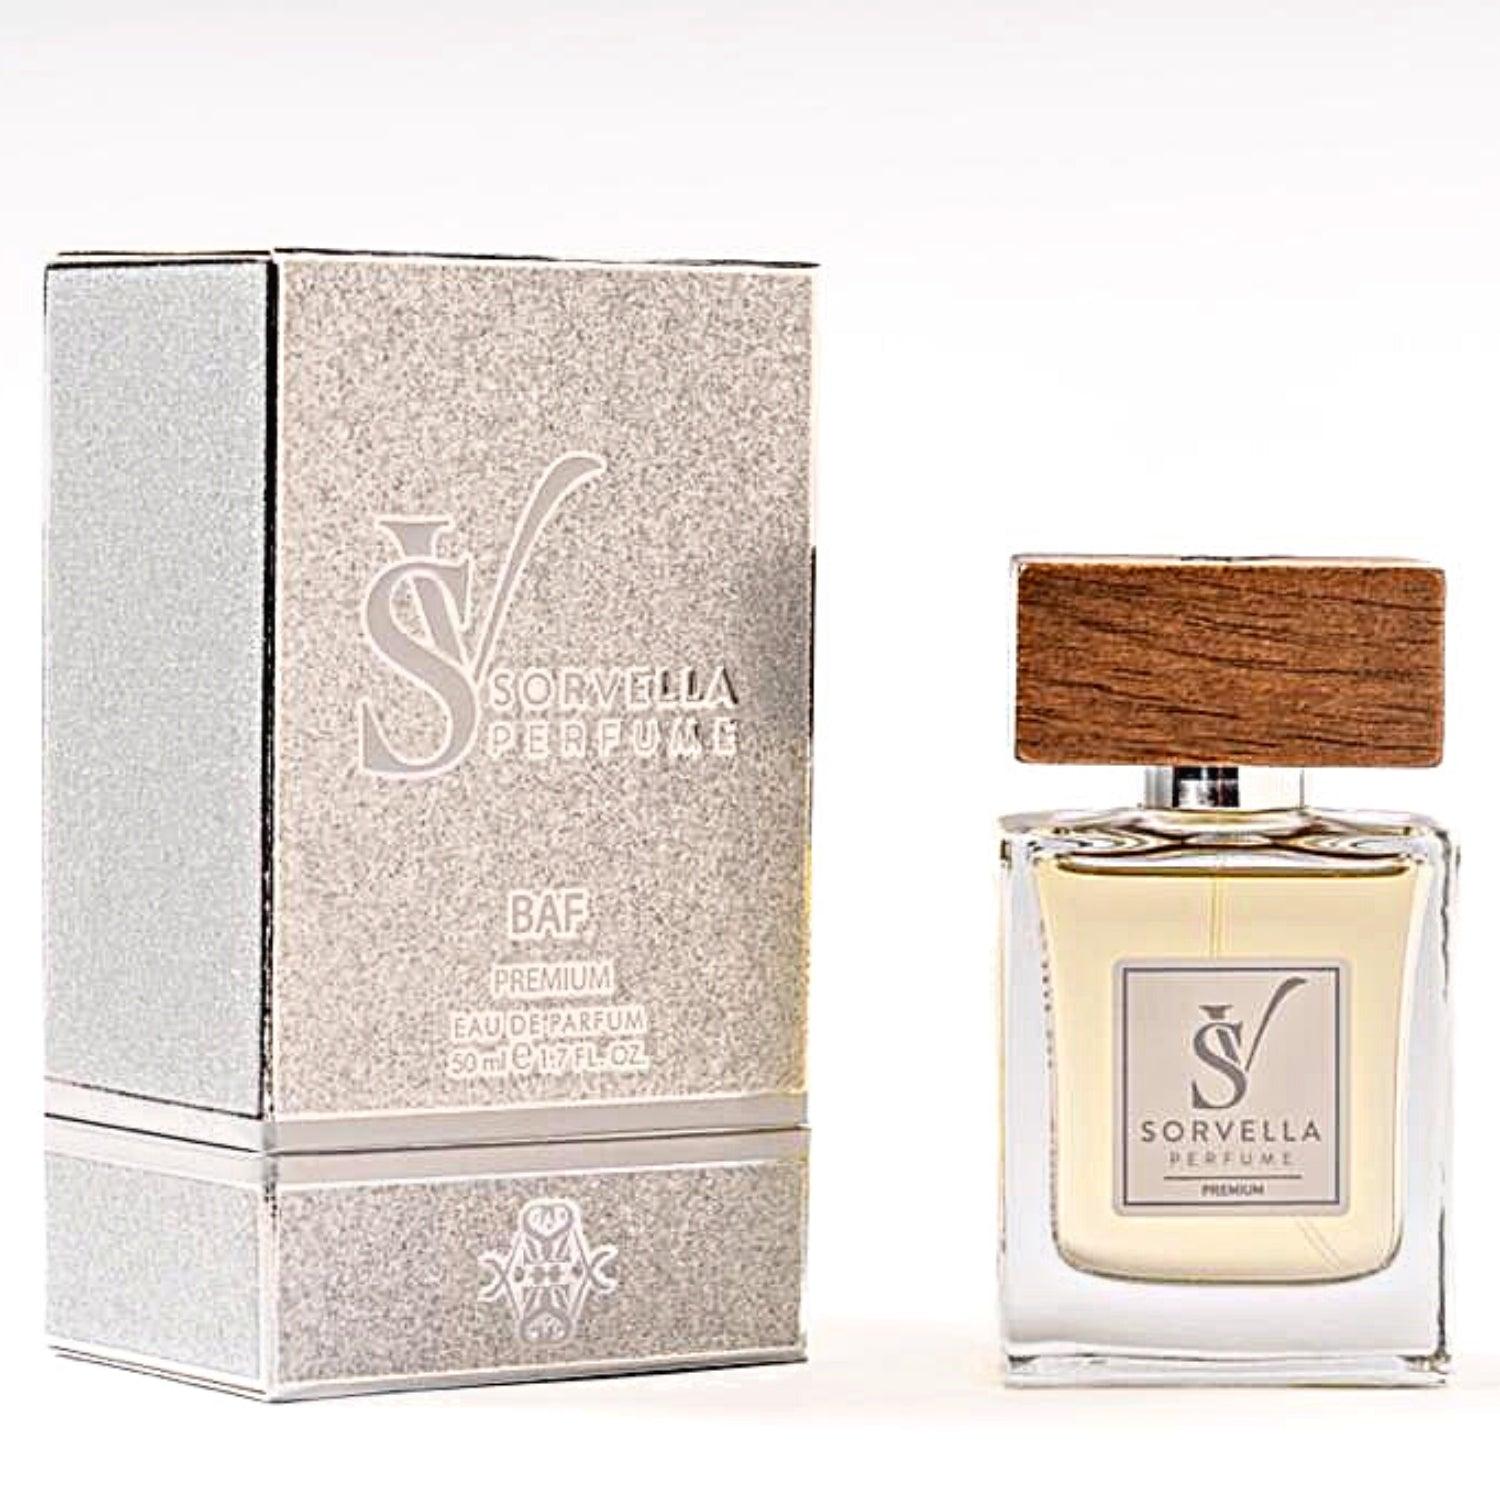 BAF - Perfumy Unisex Premium 50 ml - sorvellaperfume.pl